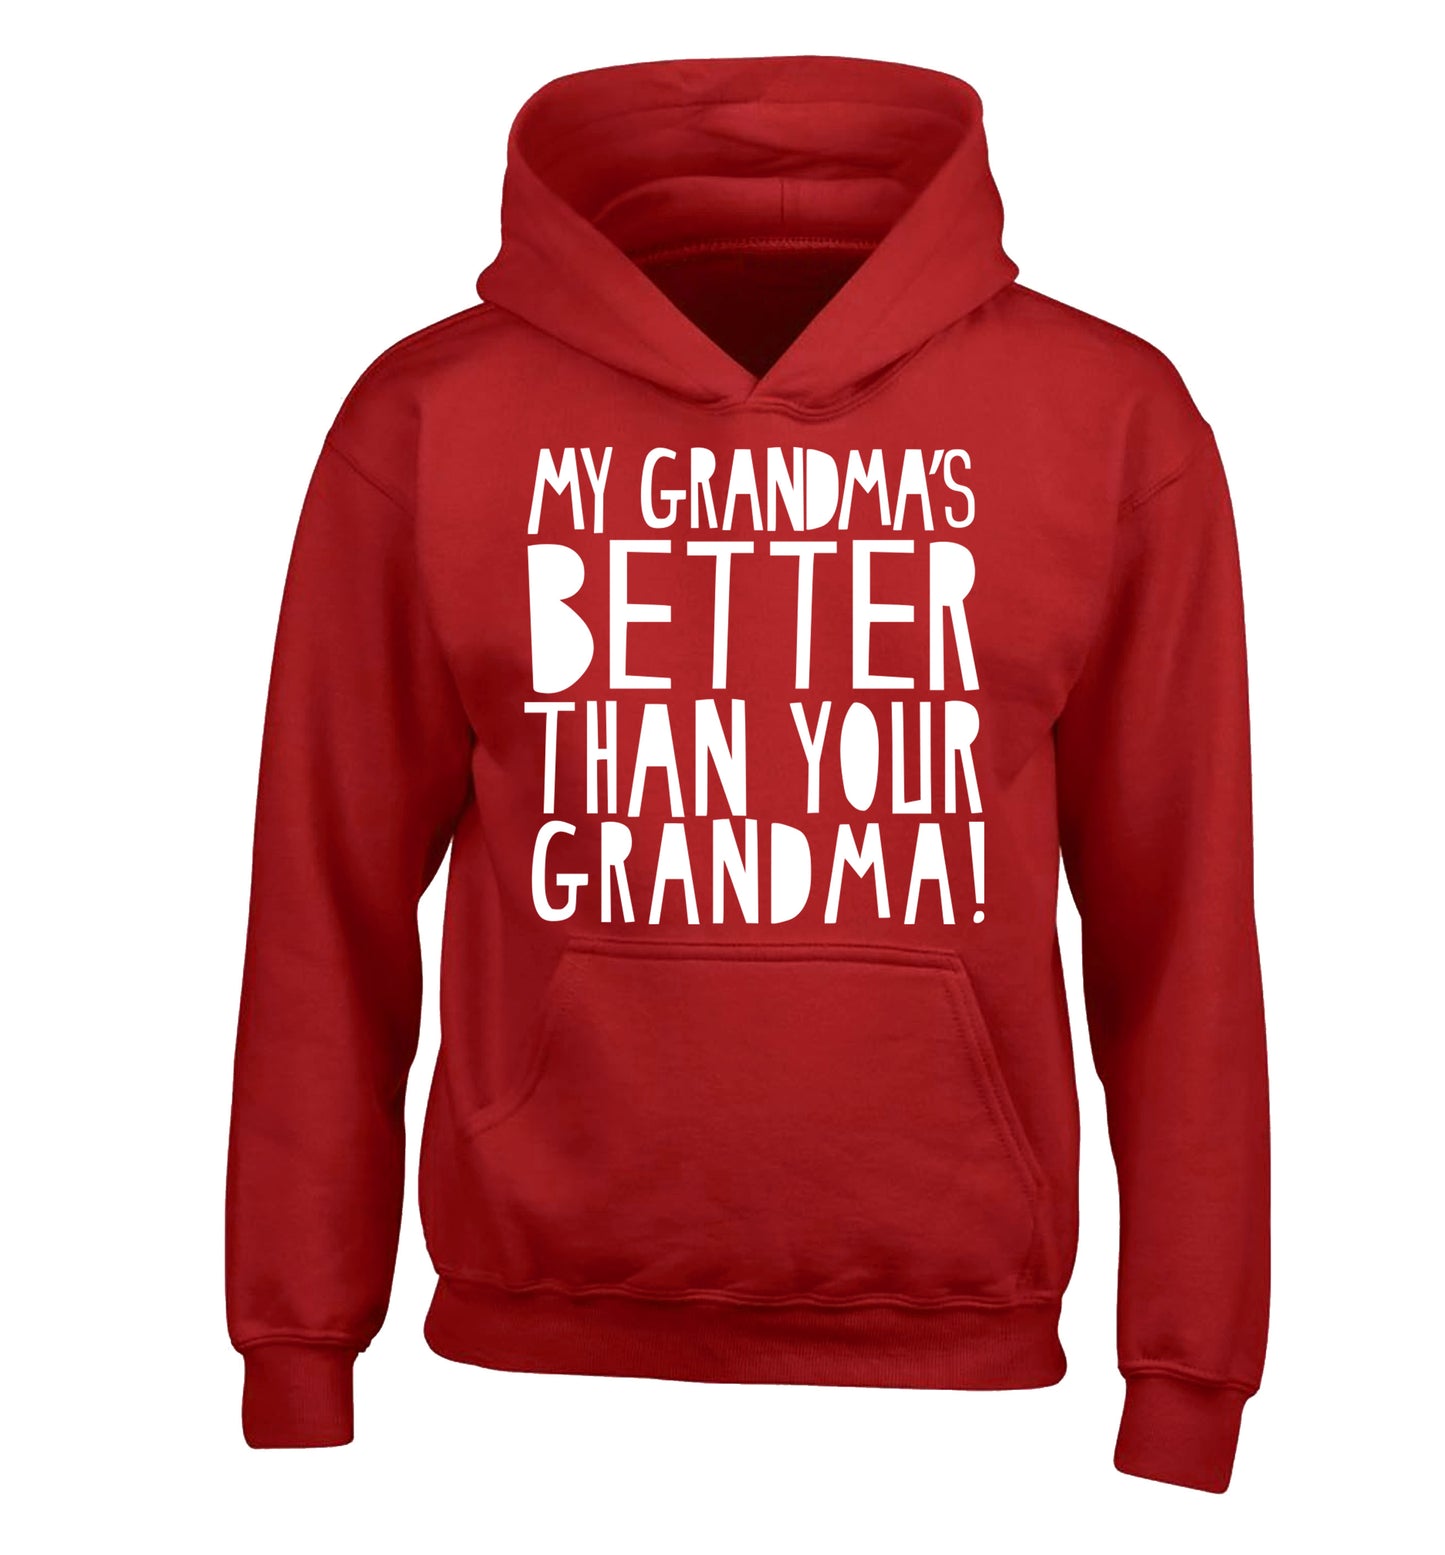 My grandma's better than your grandma children's red hoodie 12-13 Years